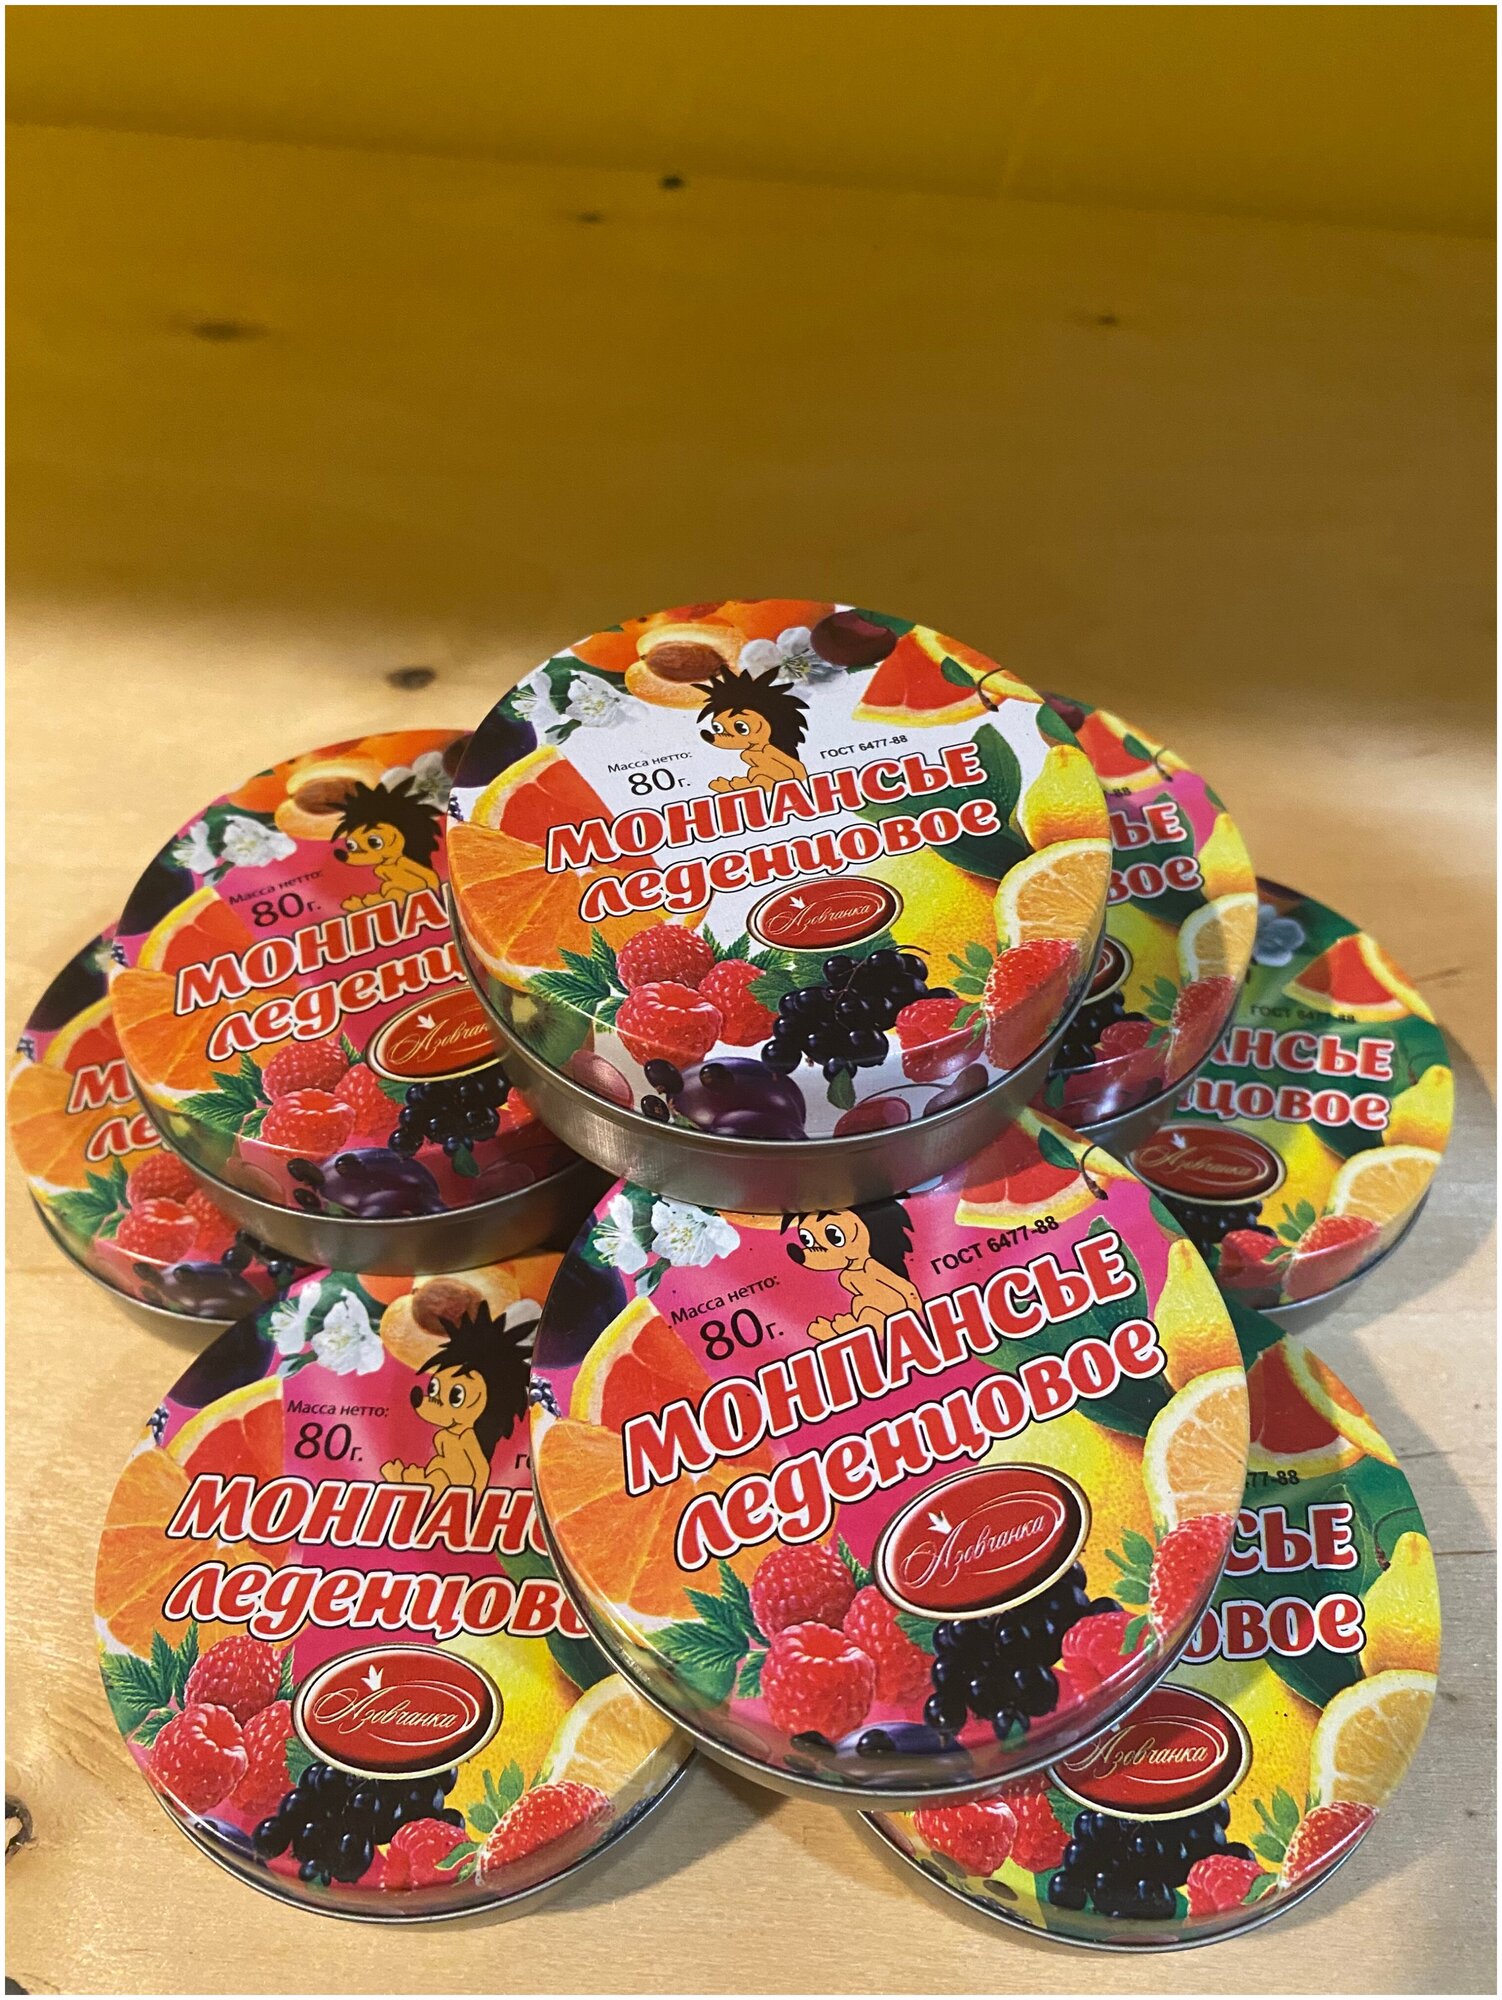 Монпансье фруктовые конфеты леденцы в красивой железной банке. 12 шт по 80 гр.